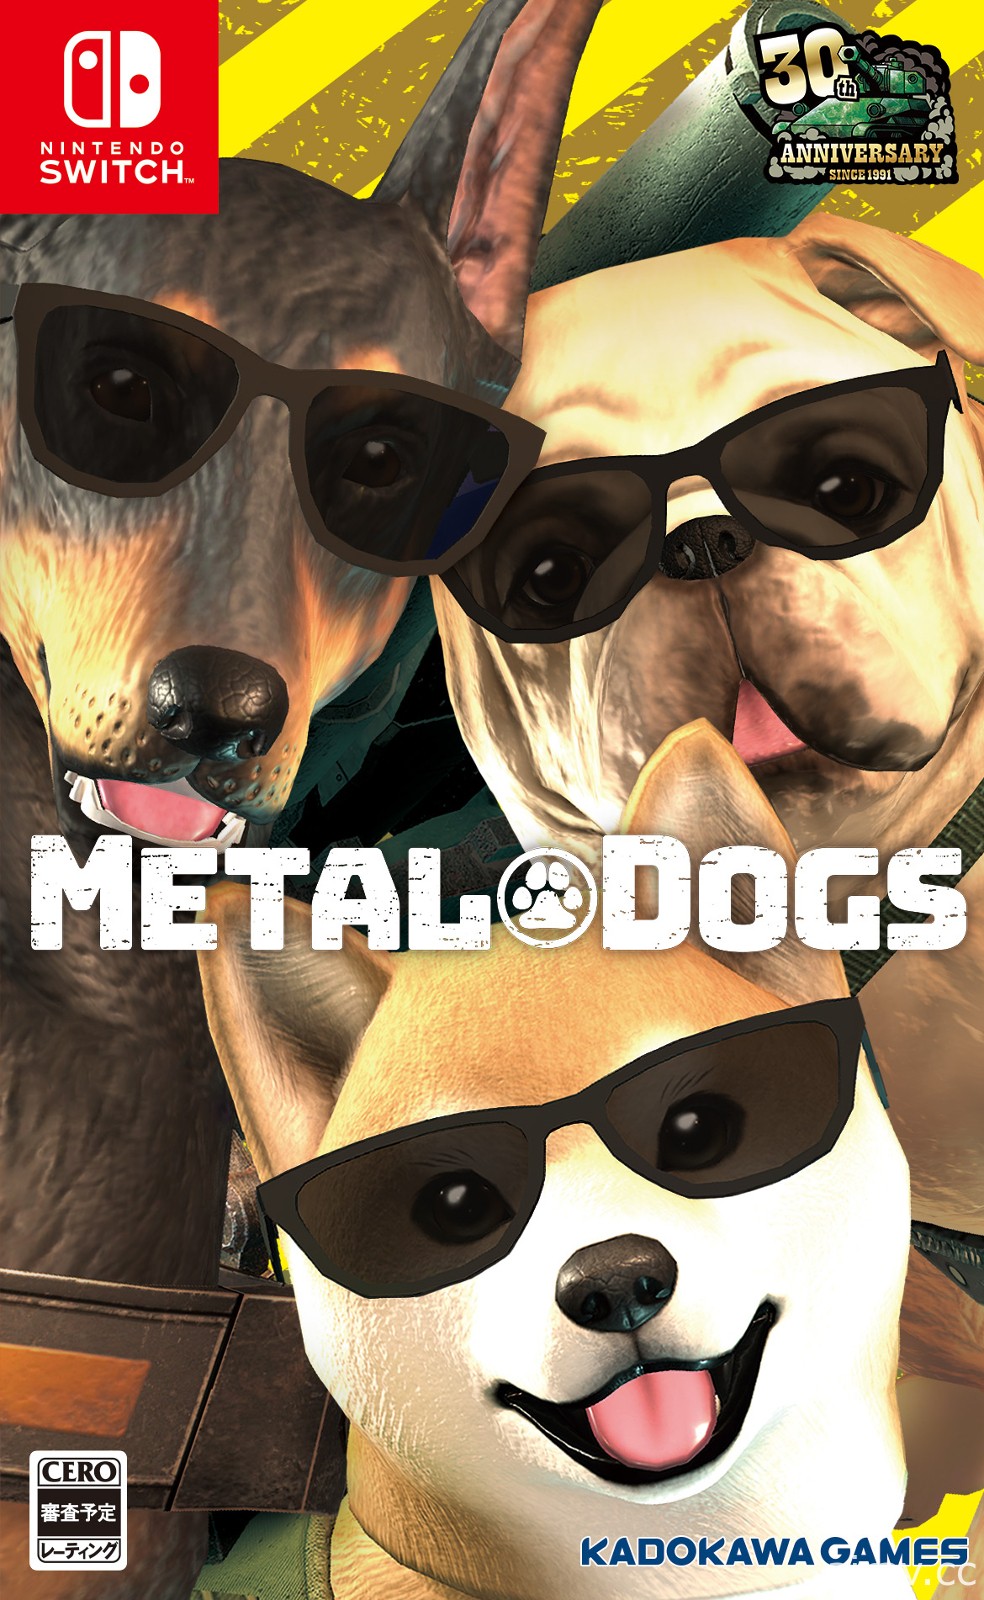 《坦克战狗》主机版将在 4/8 柴犬之日推出 公布正式版游戏追加要素介绍